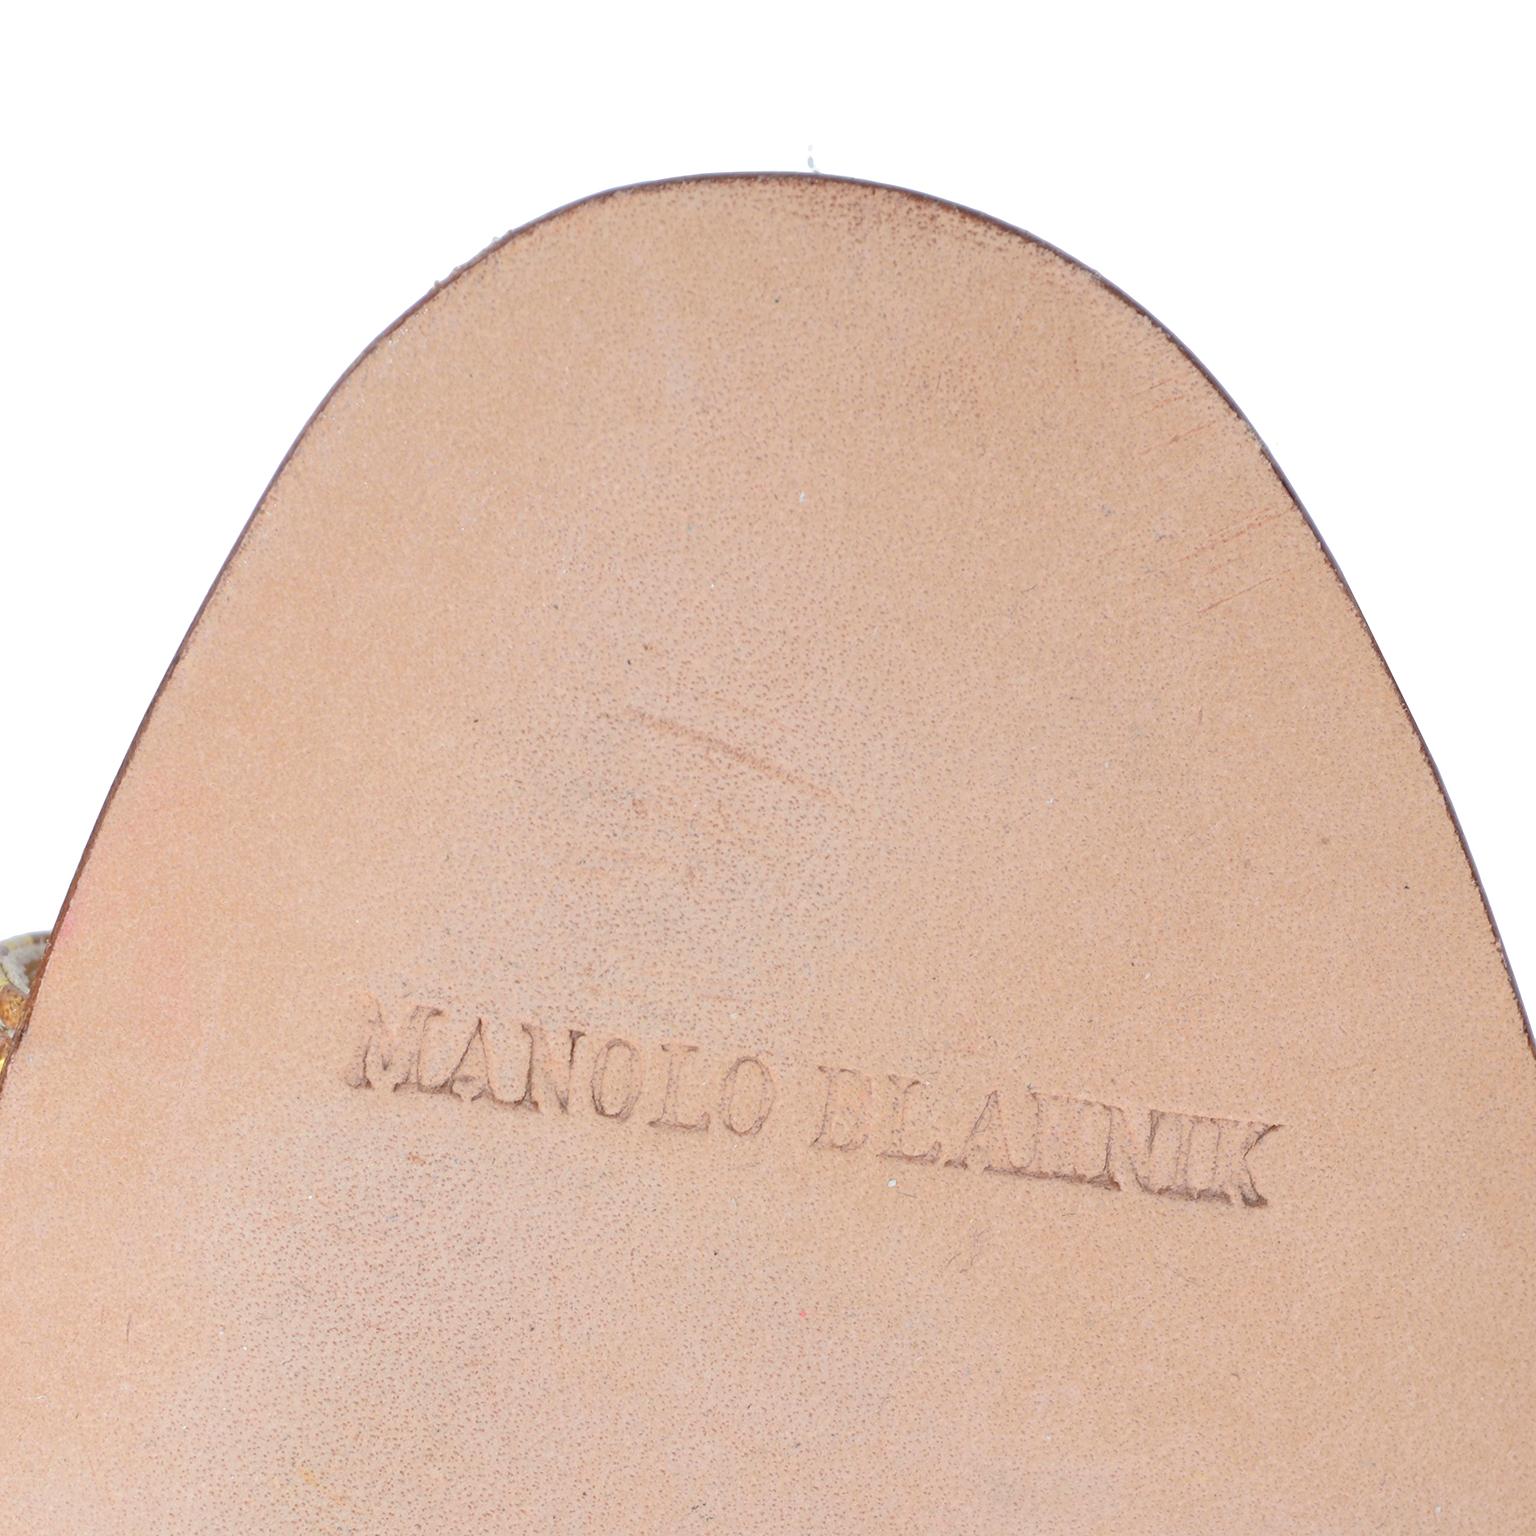 Manolo Blahnik Shoes Gold Floral Brocade Sandal Slides With Heels Size 38.5 2